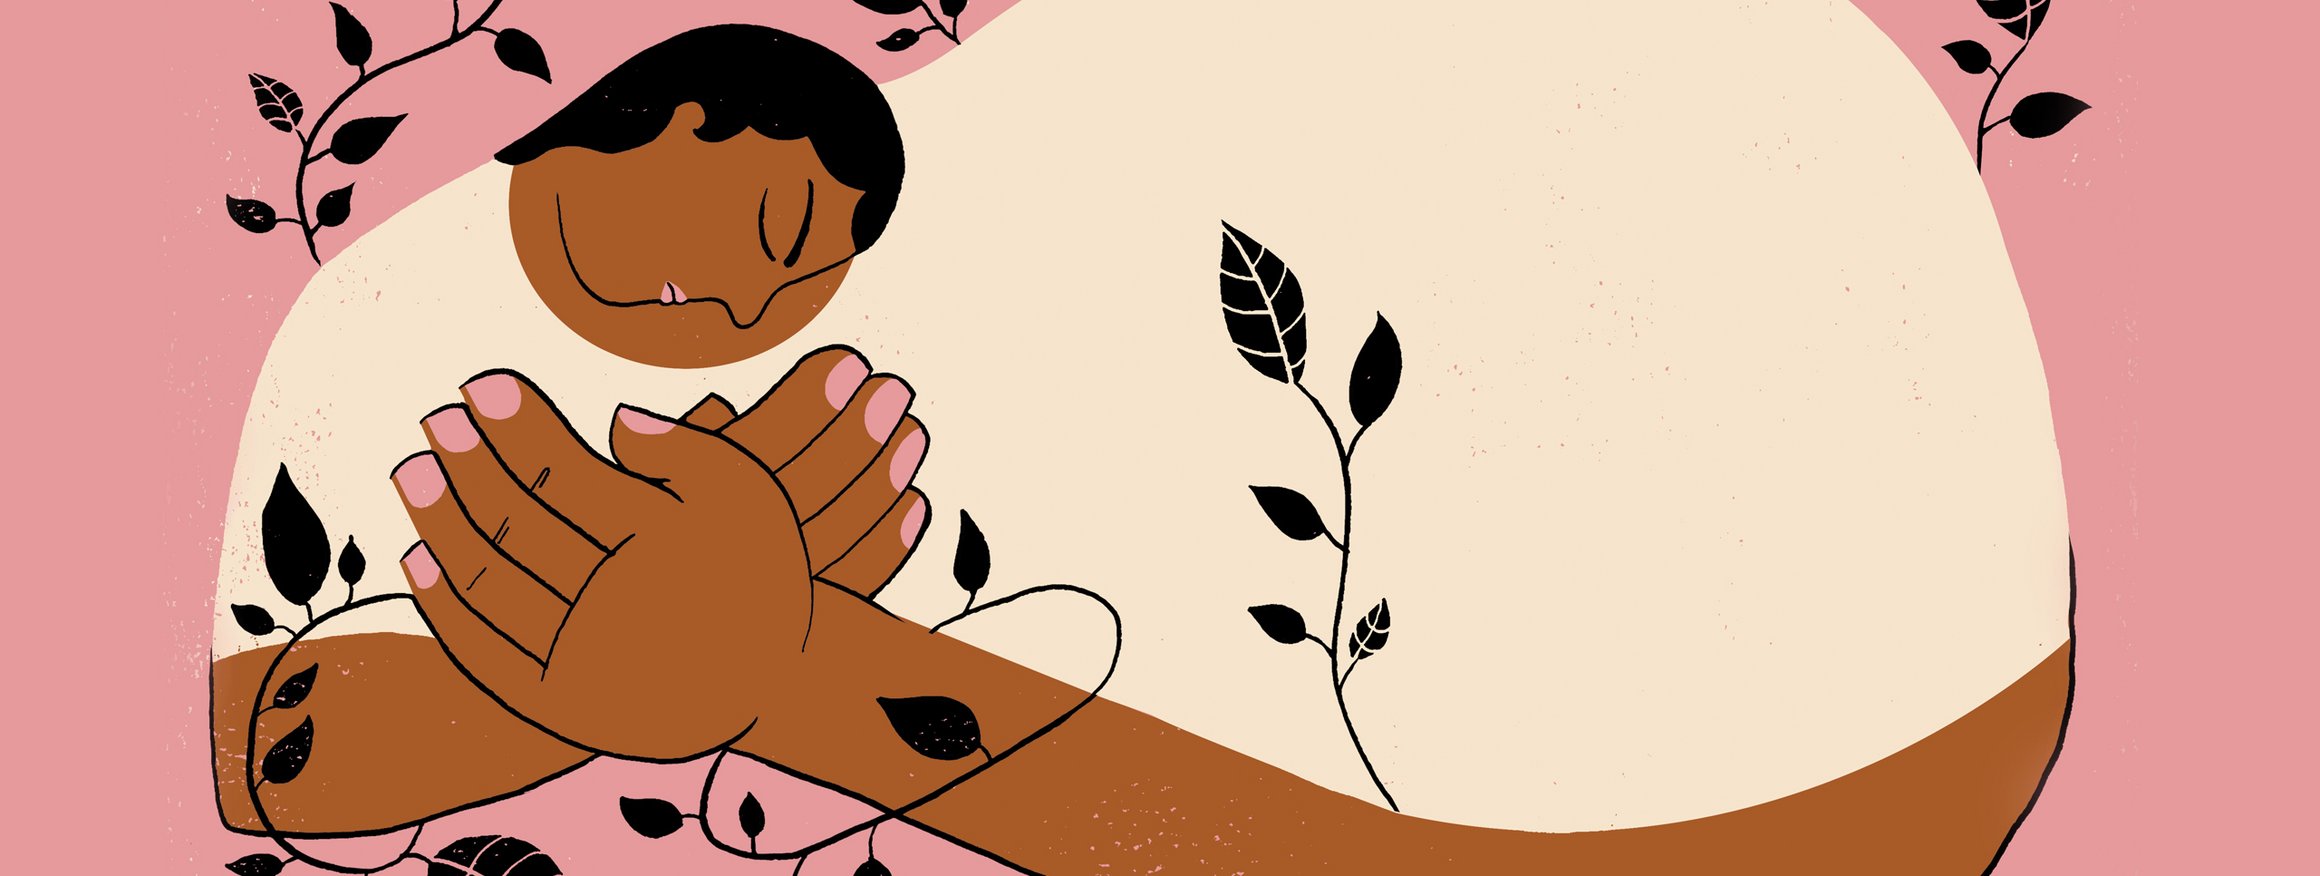 Die Illustration zeigt eine Schwarze Frau, die sich mit sehr großen Händen selbst liebevoll umarmt, während um sie herum zarte Pflanzen wachsen.